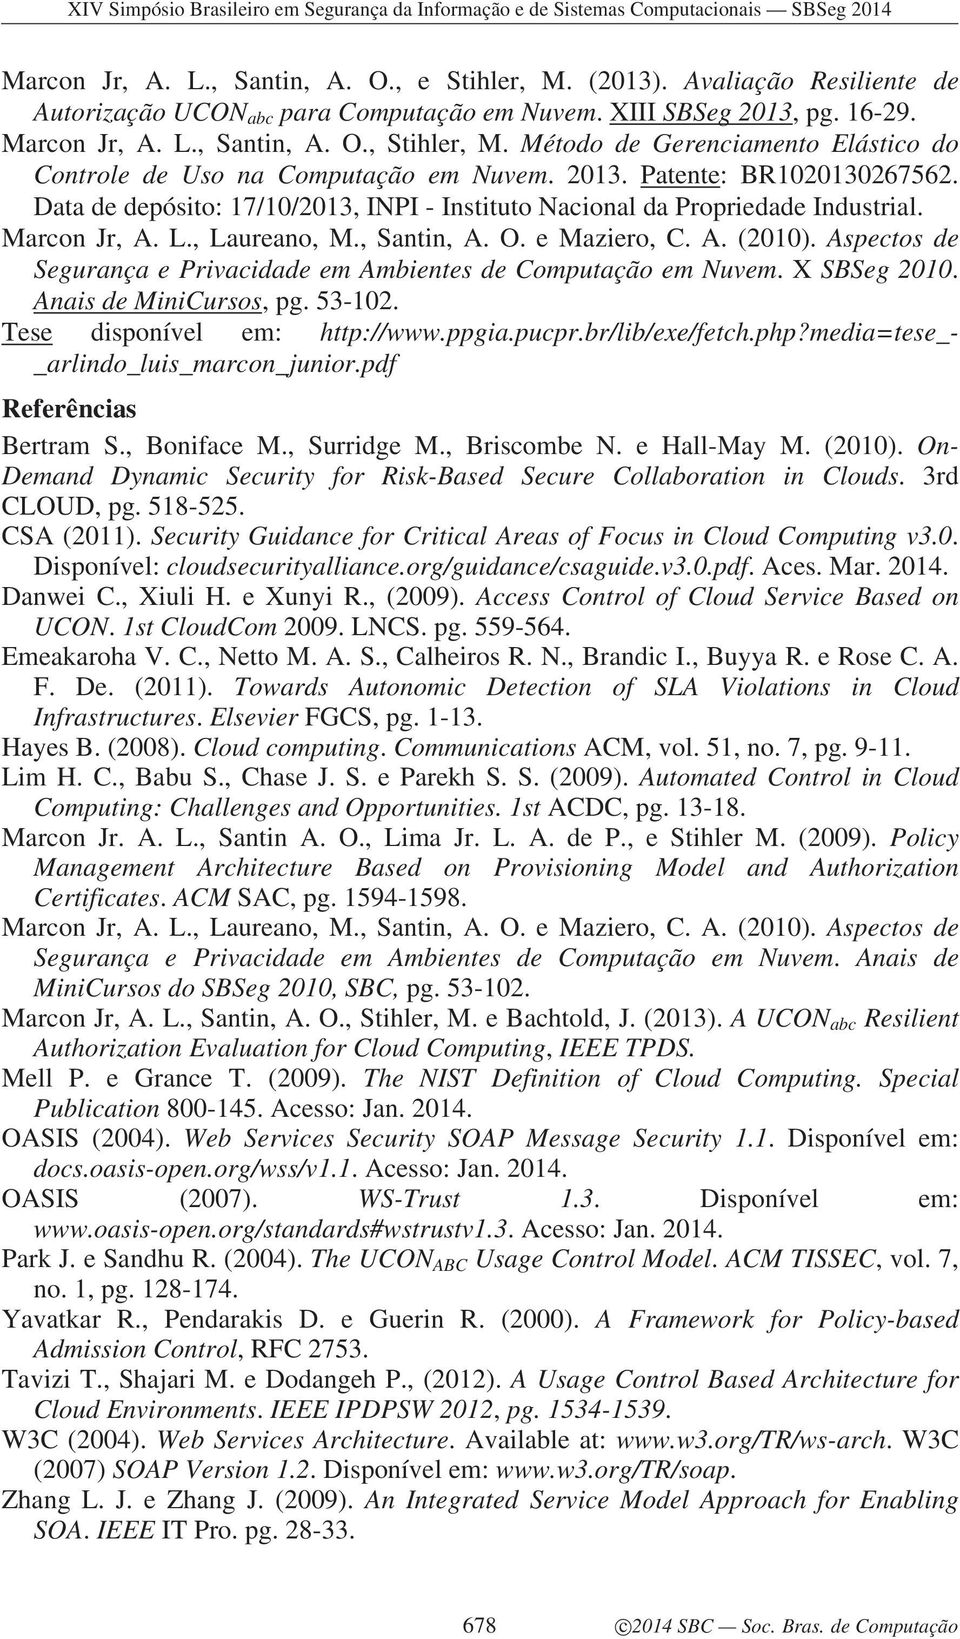 Marcon Jr, A. L., Laureano, M., Santin, A. O. e Maziero, C. A. (2010). Aspectos de Segurança e Privacidade em Ambientes de Computação em Nuvem. X SBSeg 2010. Anais de MiniCursos, pg. 53-102.